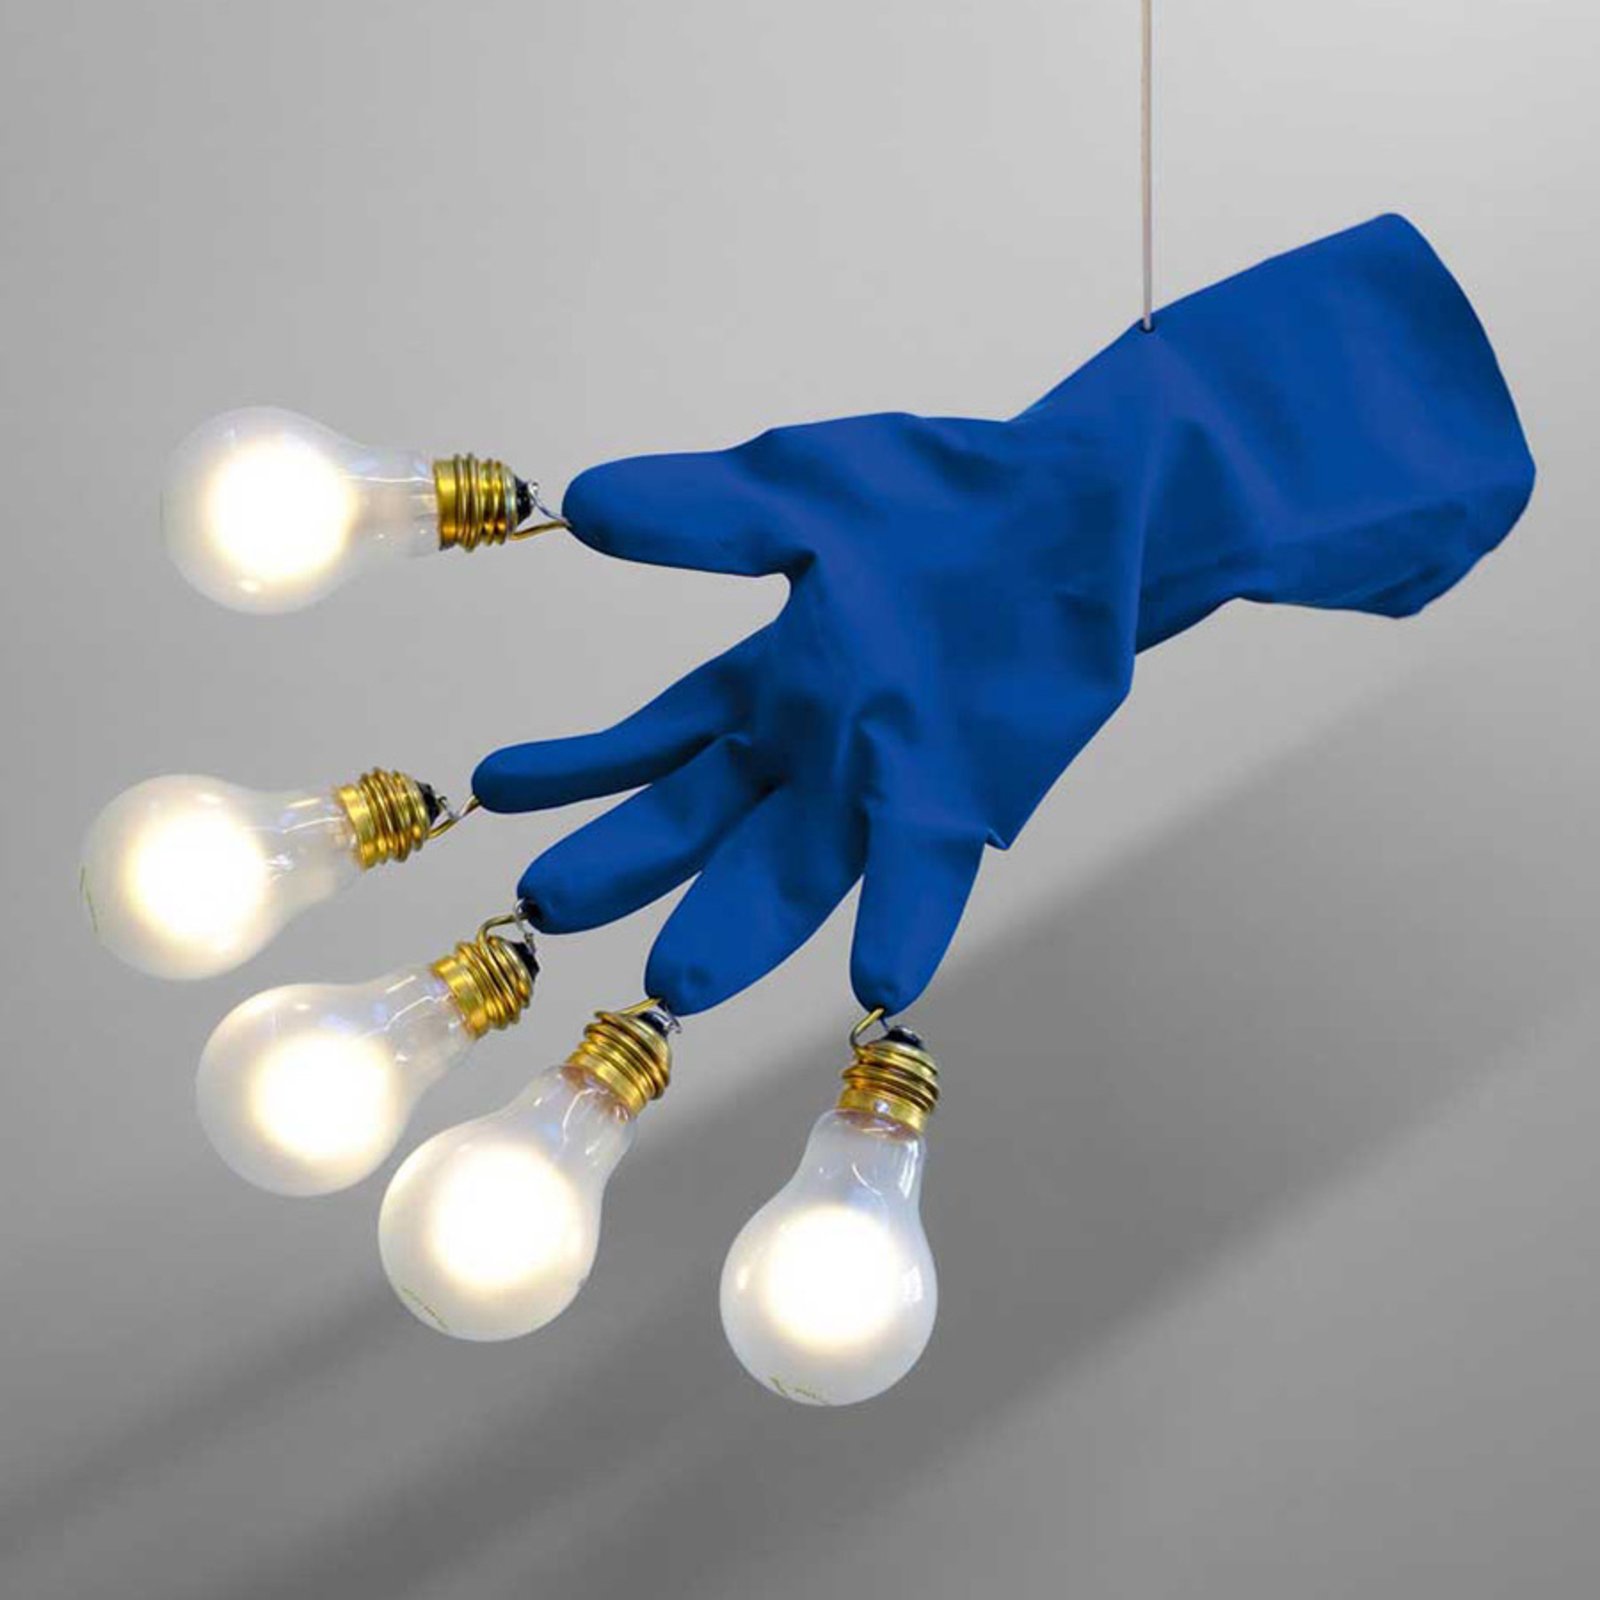 Ingo Maurer Luzy Take Five LED függő lámpa